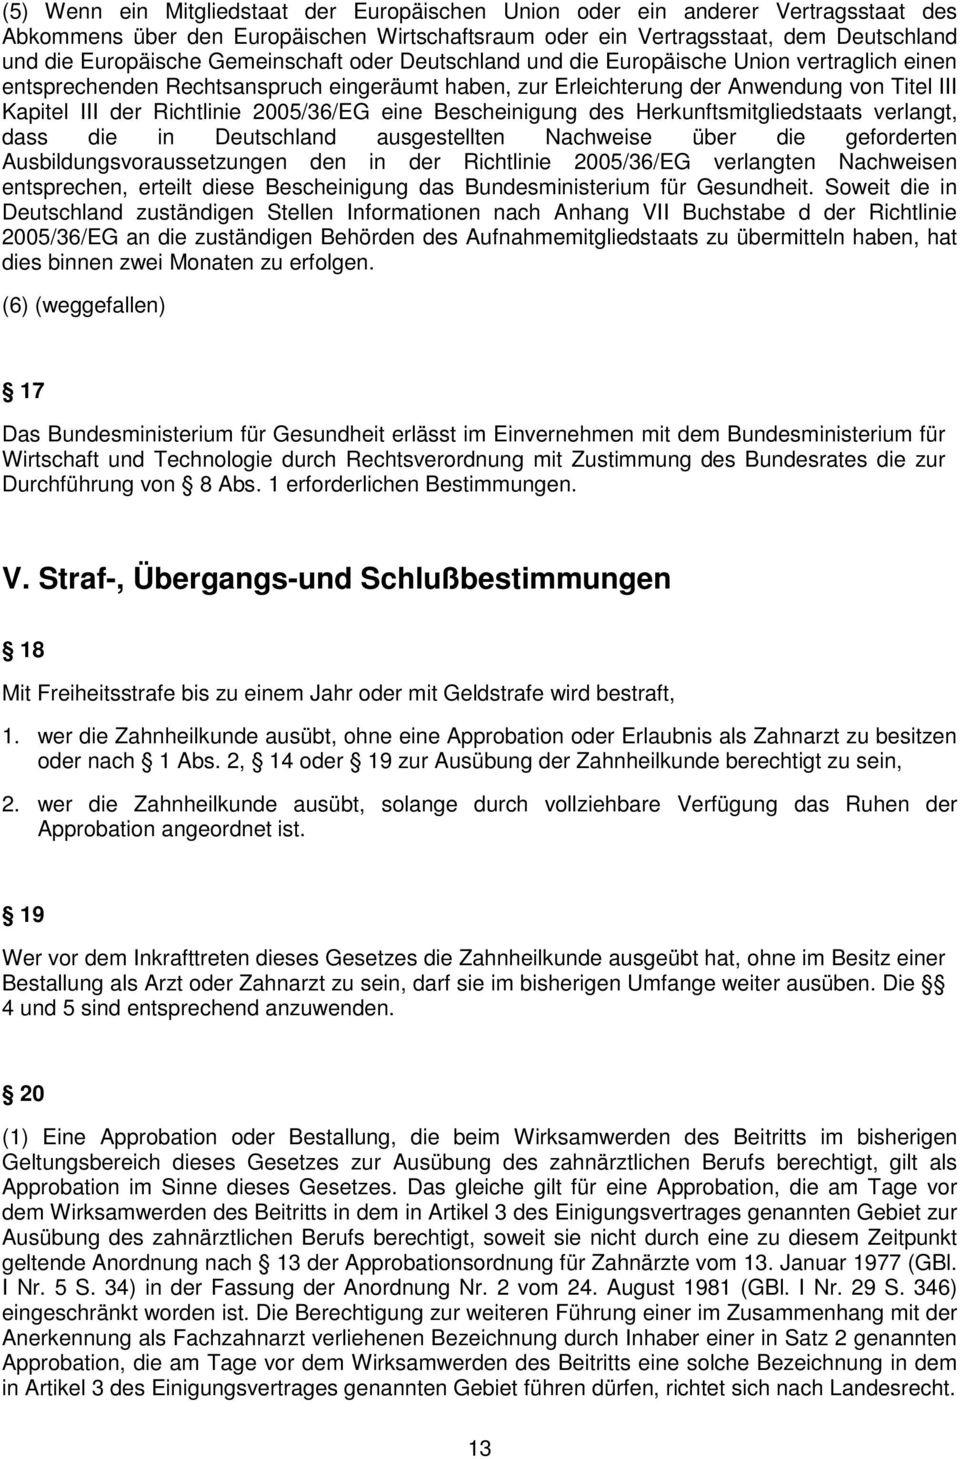 2005/36/EG eine Bescheinigung des Herkunftsmitgliedstaats verlangt, dass die in Deutschland ausgestellten Nachweise über die geforderten Ausbildungsvoraussetzungen den in der Richtlinie 2005/36/EG